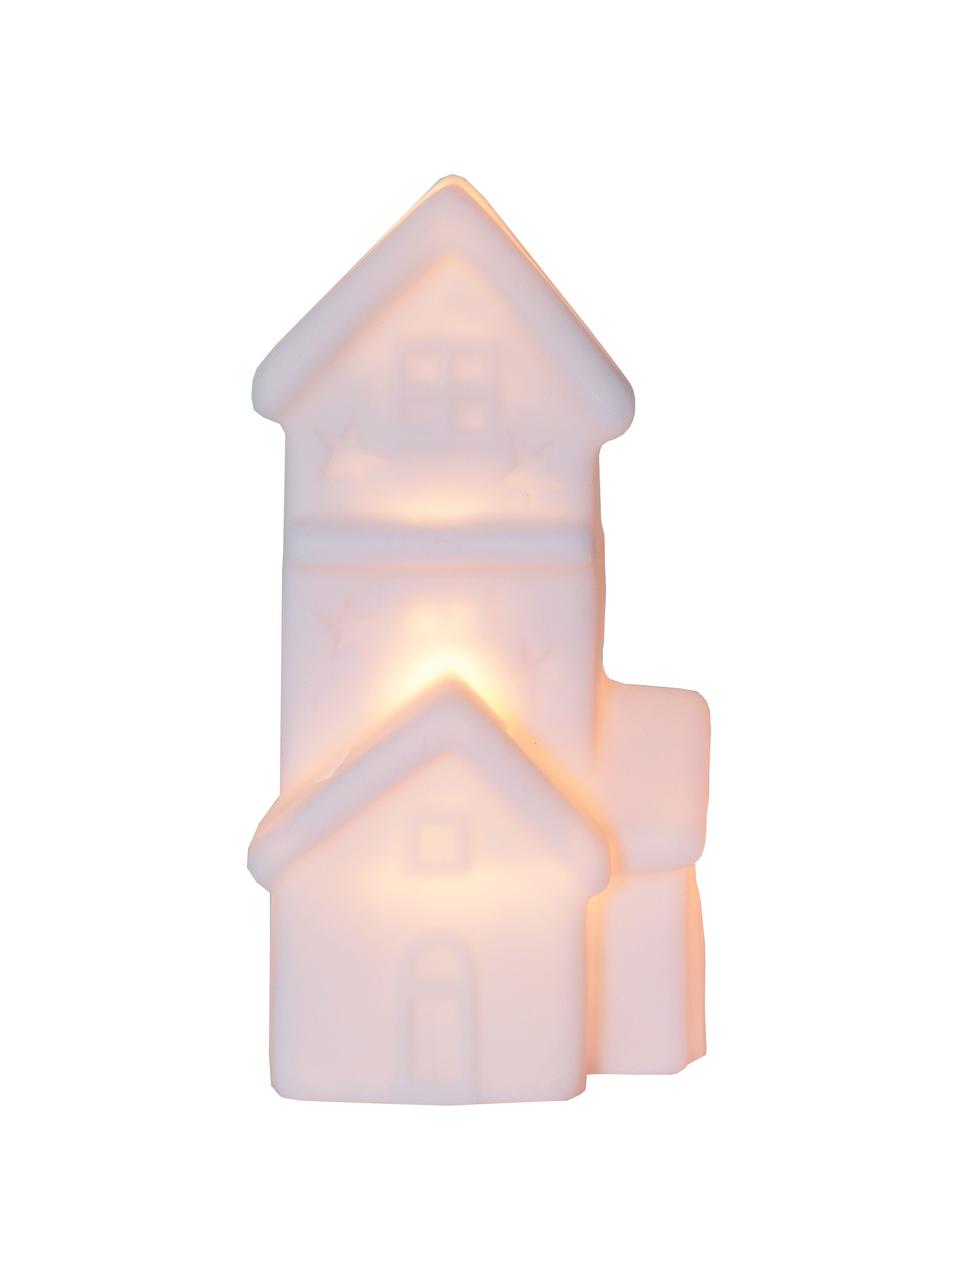 Figuras luminosas Polly, 2 uds., a pilas, Plástico, Blanco, An 8 x Al 16 cm